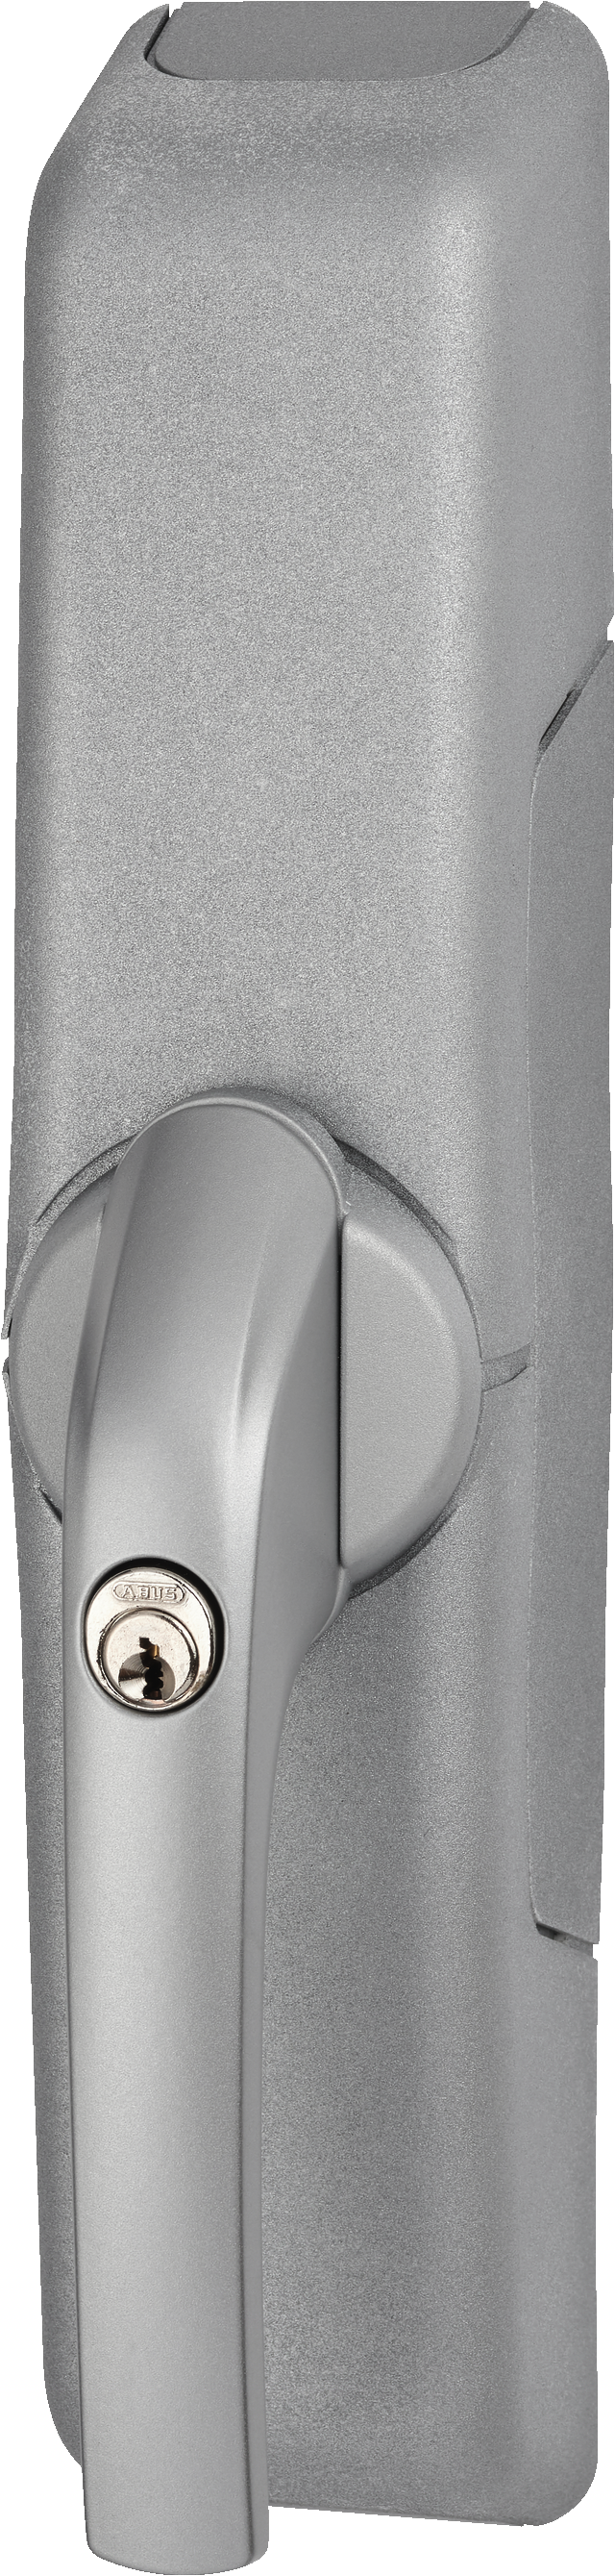 attuatore wireless per finestre HomeTec Pro FCA3000 argento vista frontale obliqua